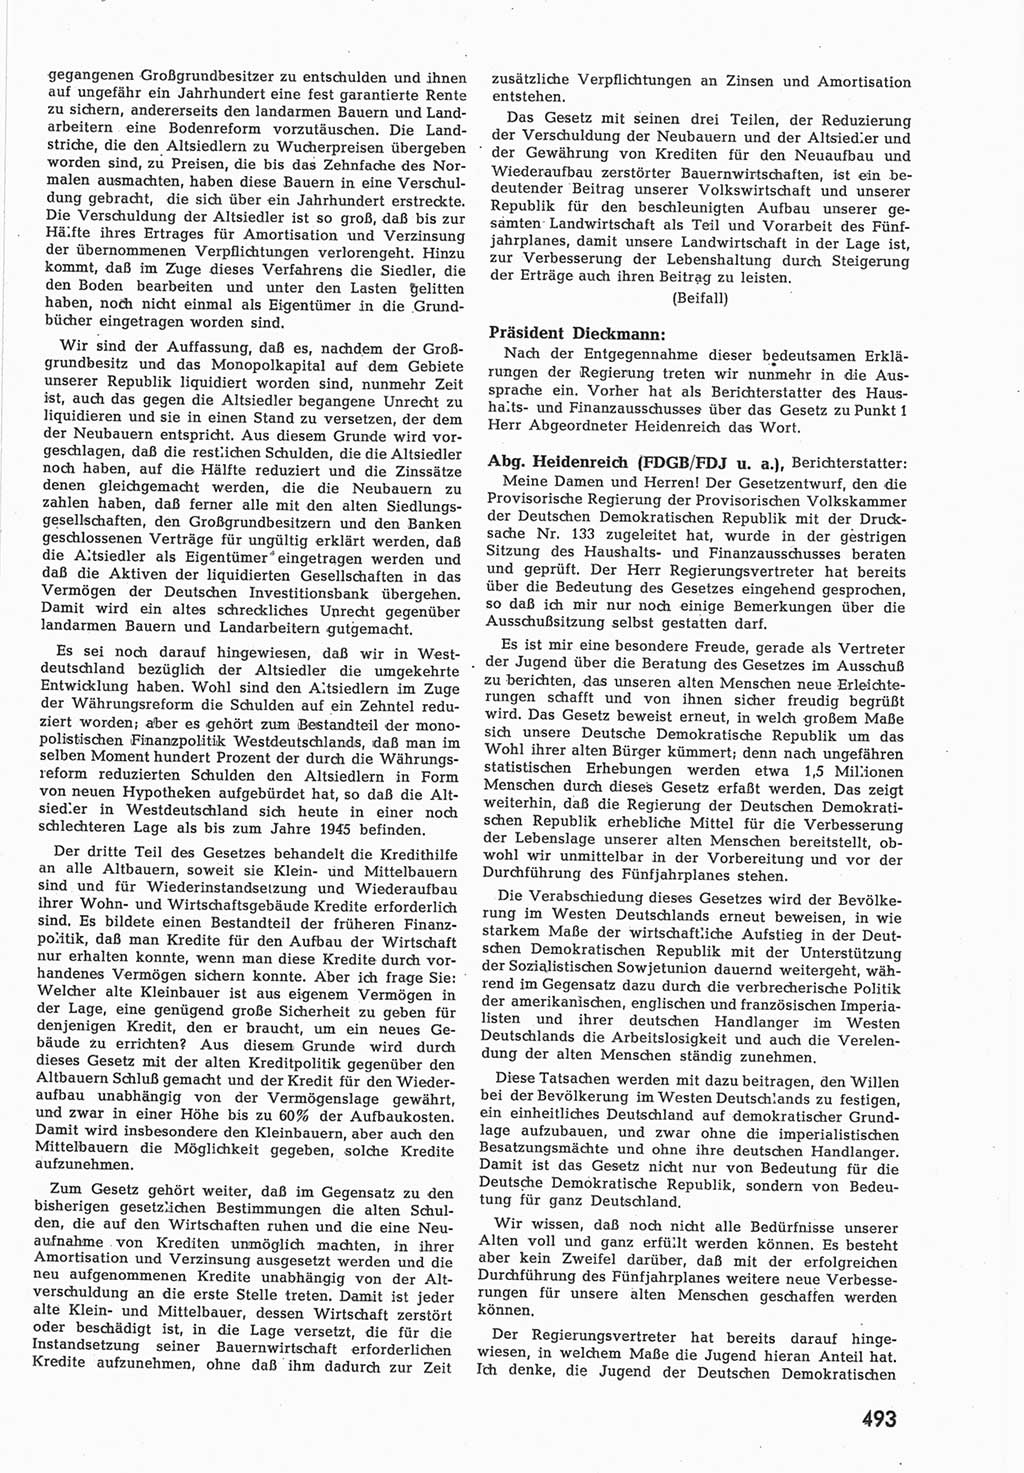 Provisorische Volkskammer (VK) der Deutschen Demokratischen Republik (DDR) 1949-1950, Dokument 511 (Prov. VK DDR 1949-1950, Dok. 511)